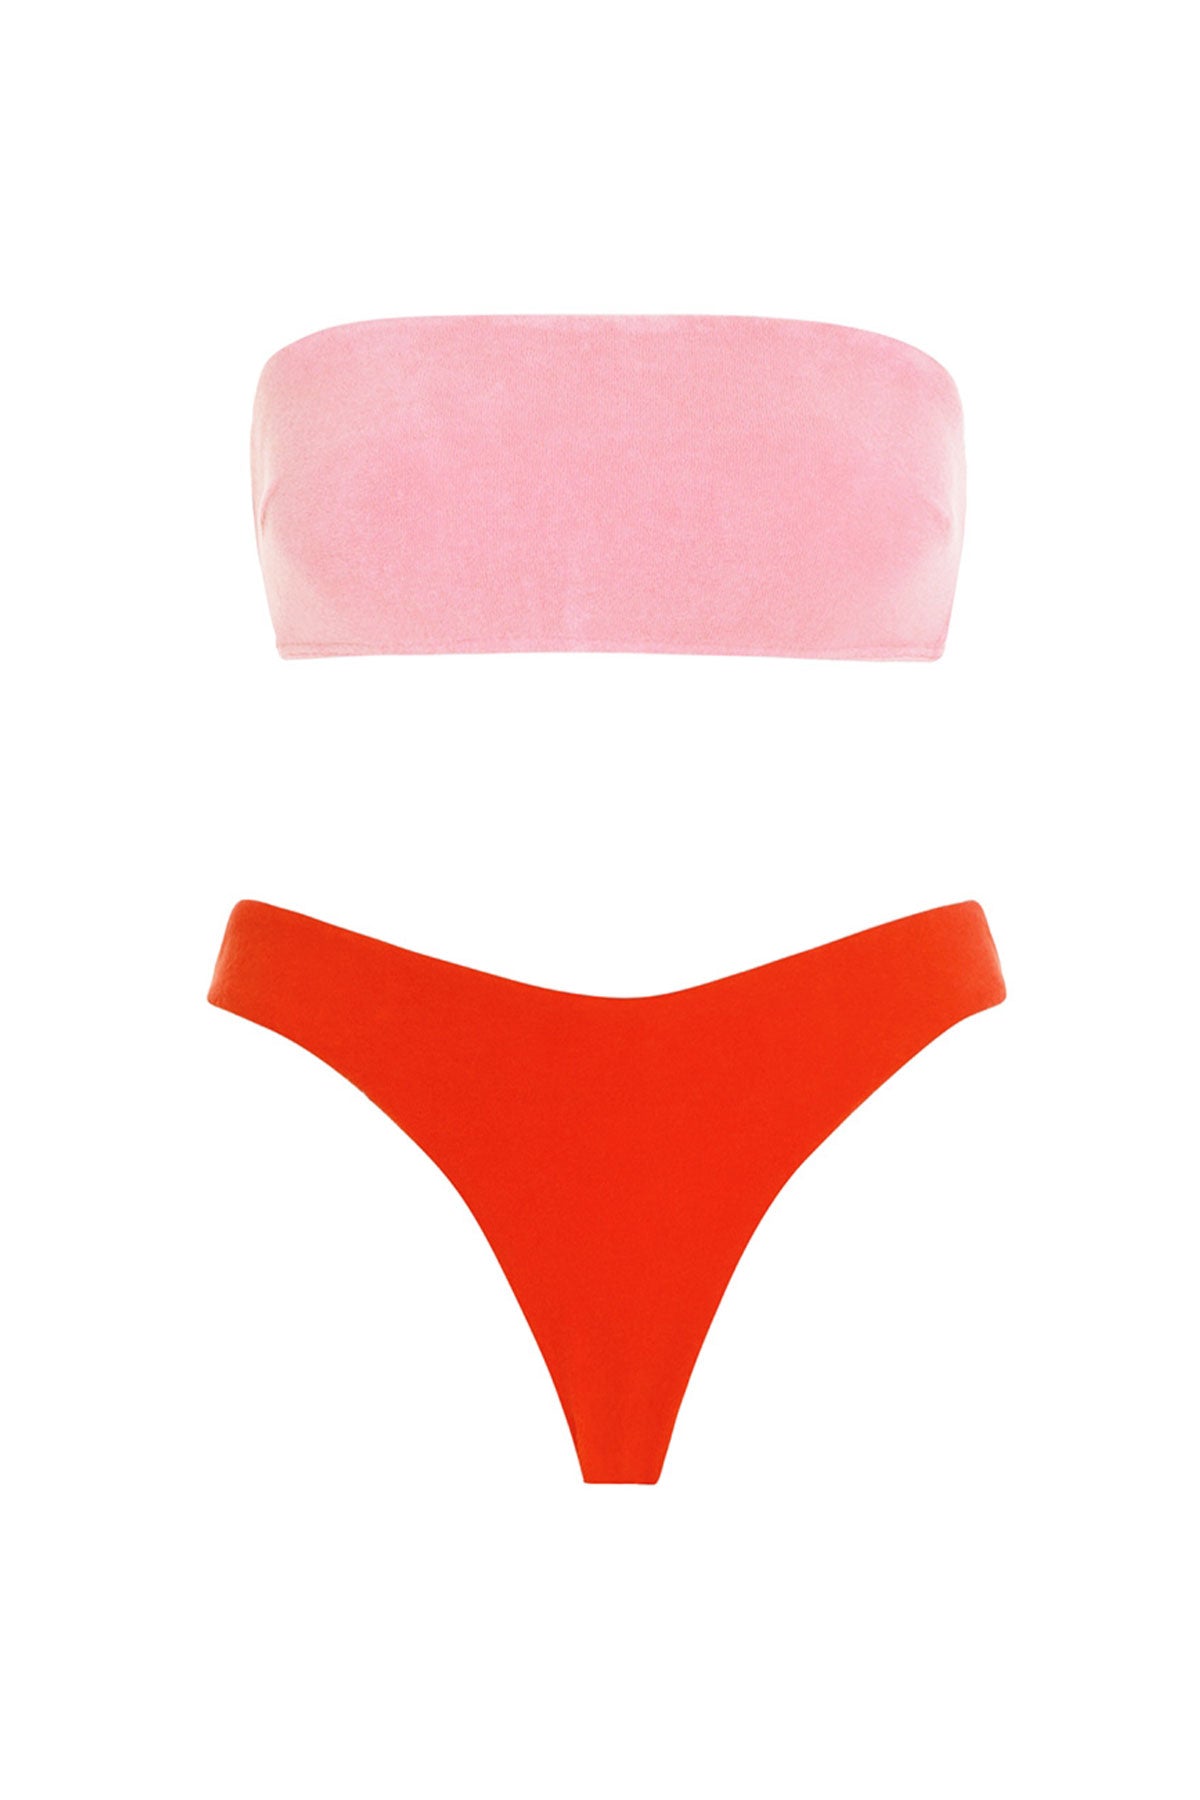 Poppy Terry Bandeau Bikini Set - shop-olivia.com